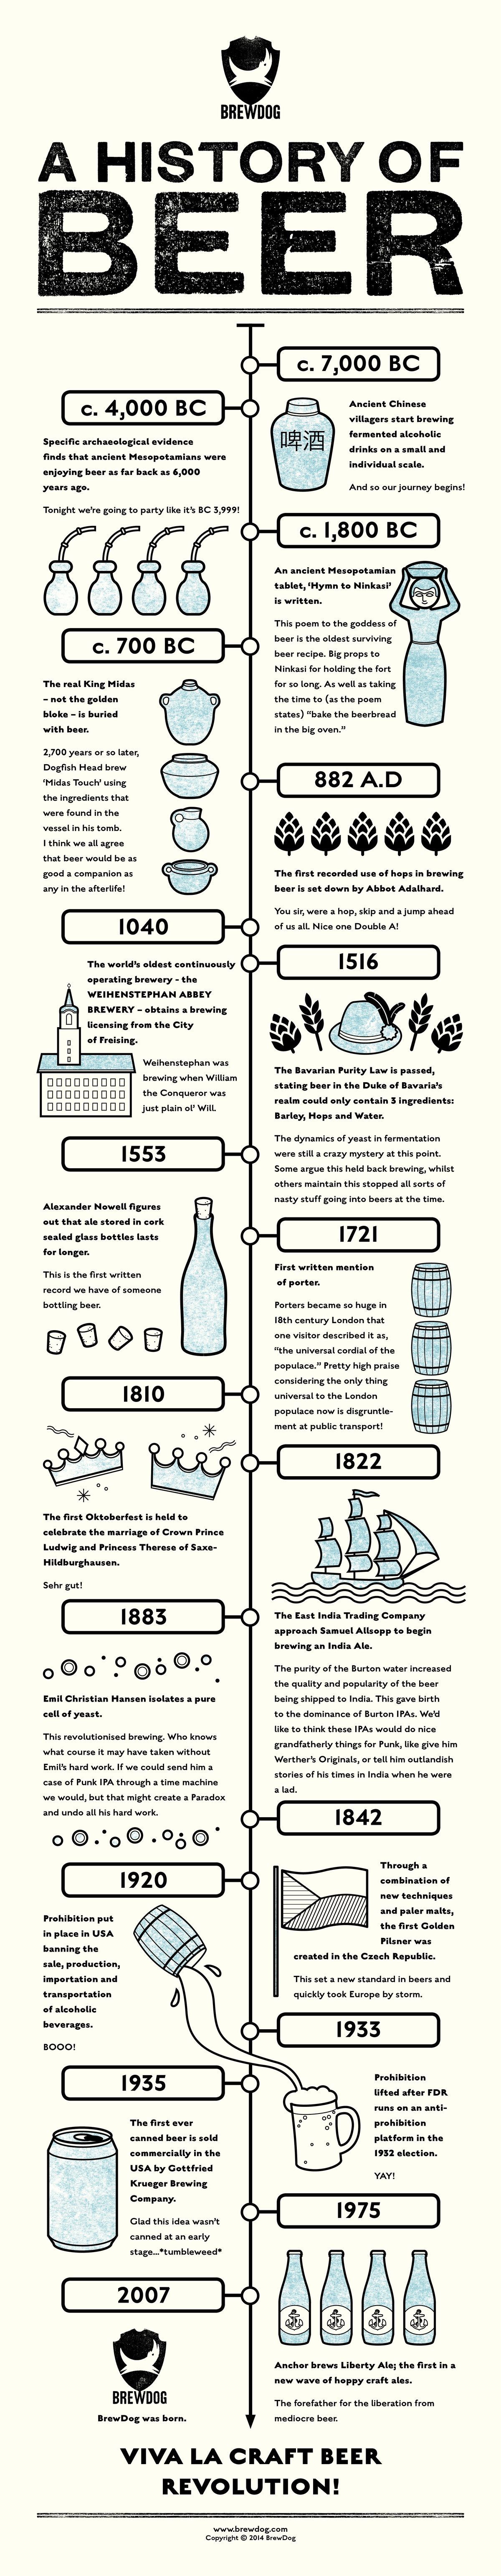 Geschiedenis van bier infographic